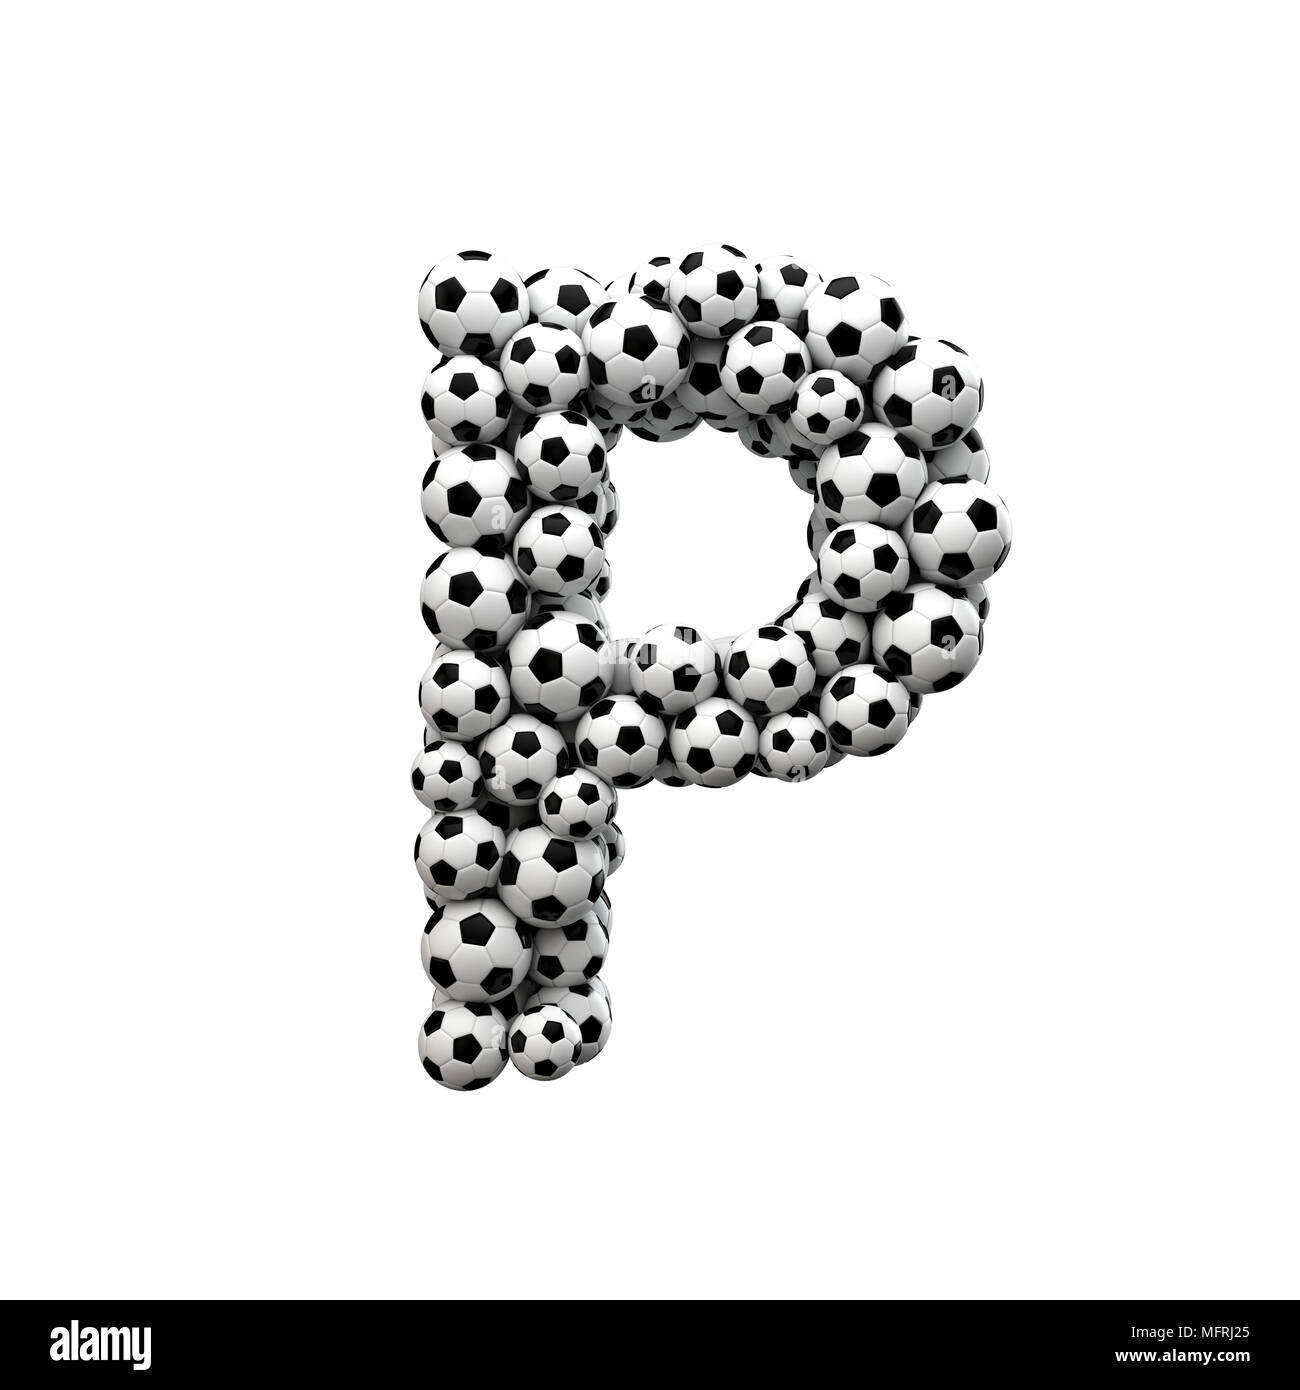 Letra mayúscula P font hechas a partir de una colección de balones de fútbol. 3D Rendering Foto de stock